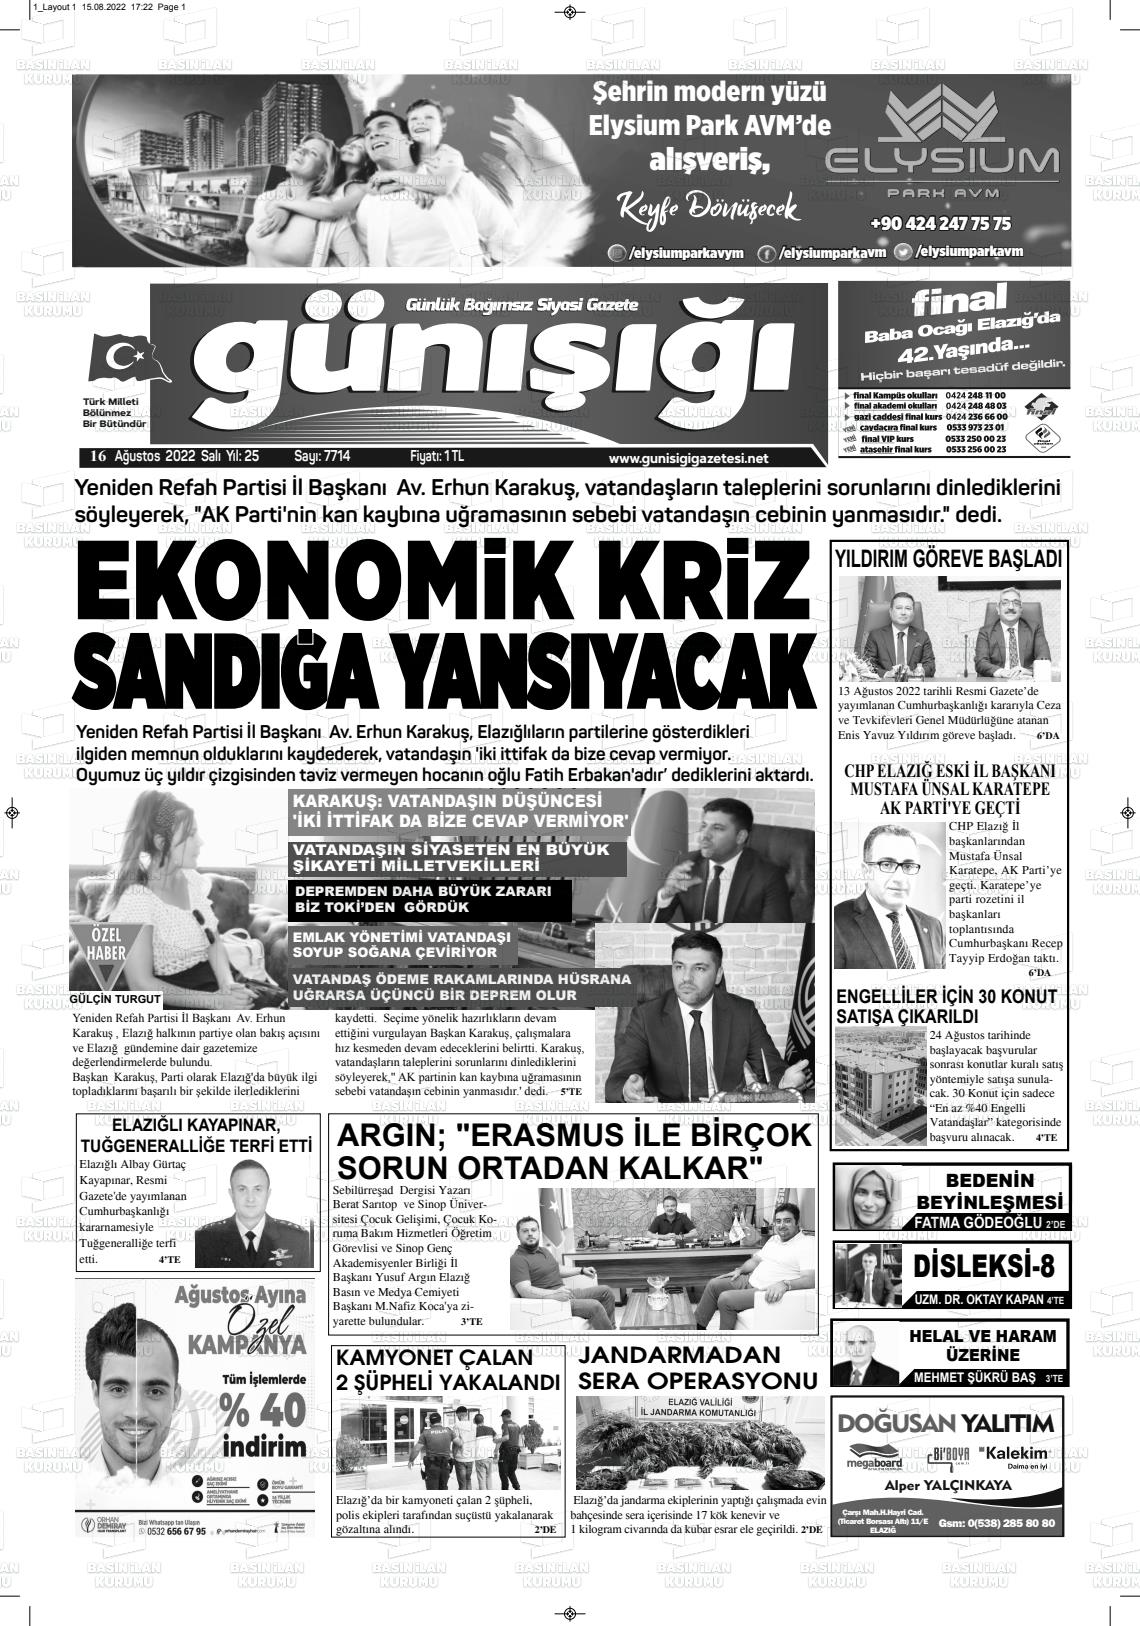 16 Ağustos 2022 Gün Işığı Gazete Manşeti